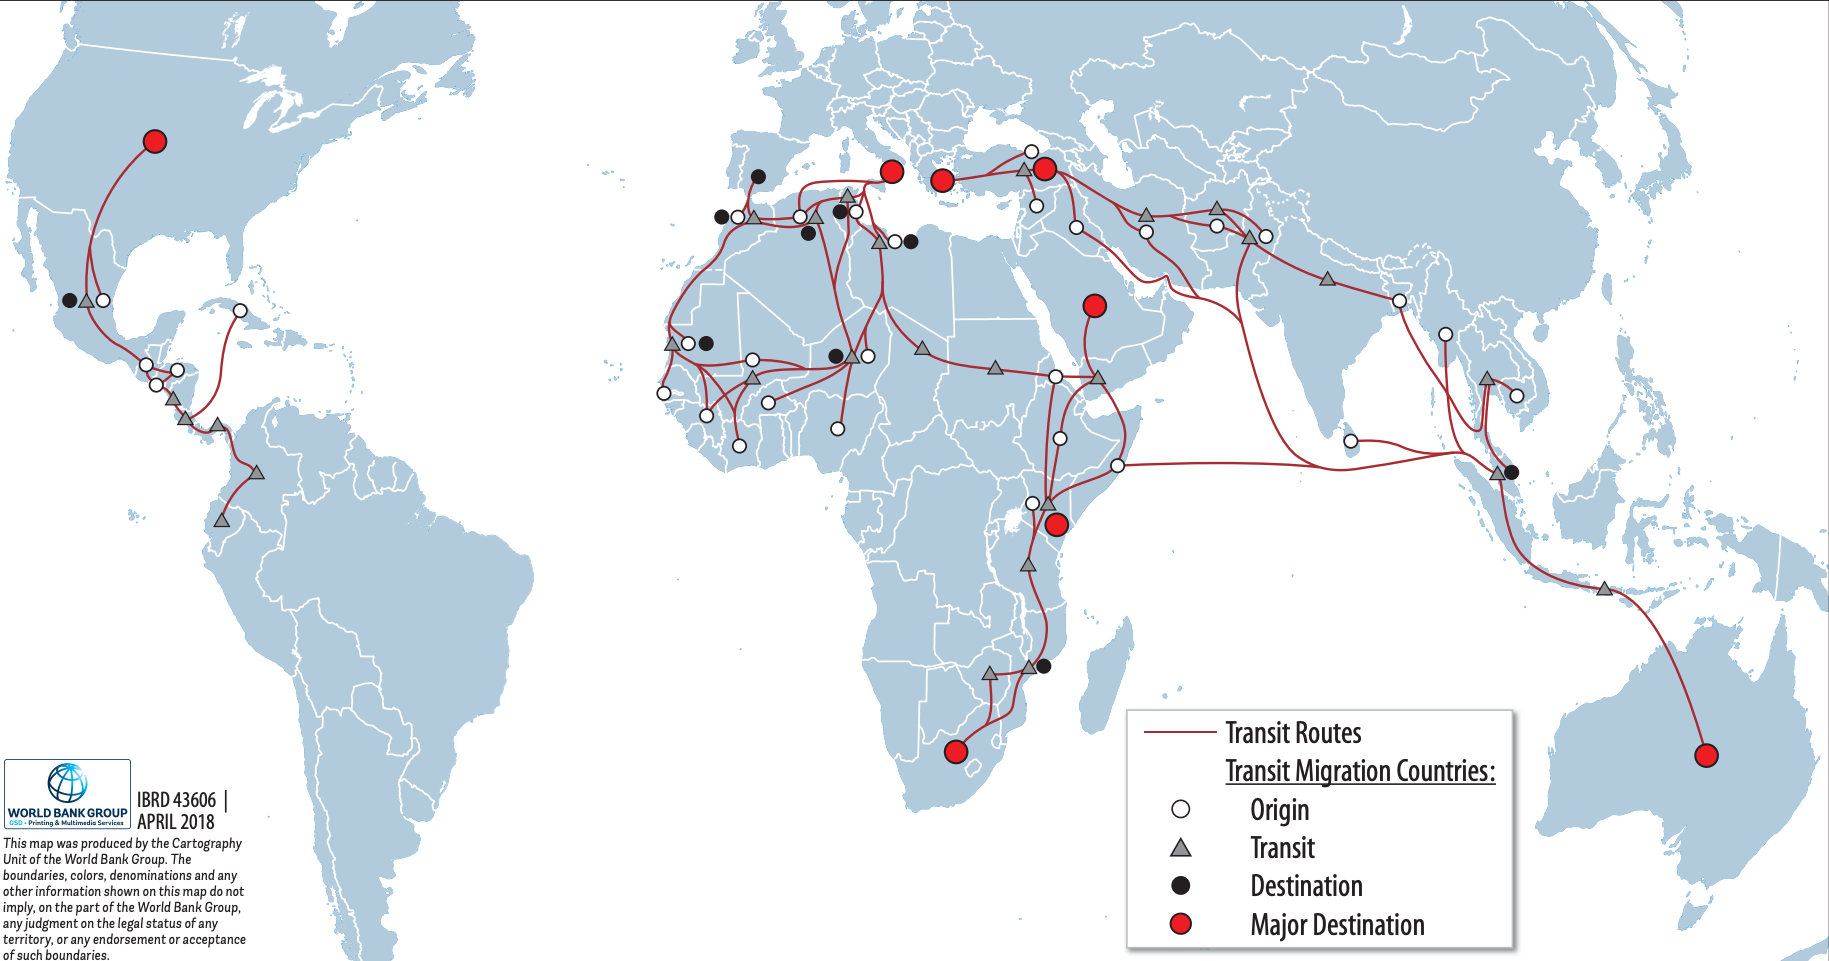 Transit migration routes